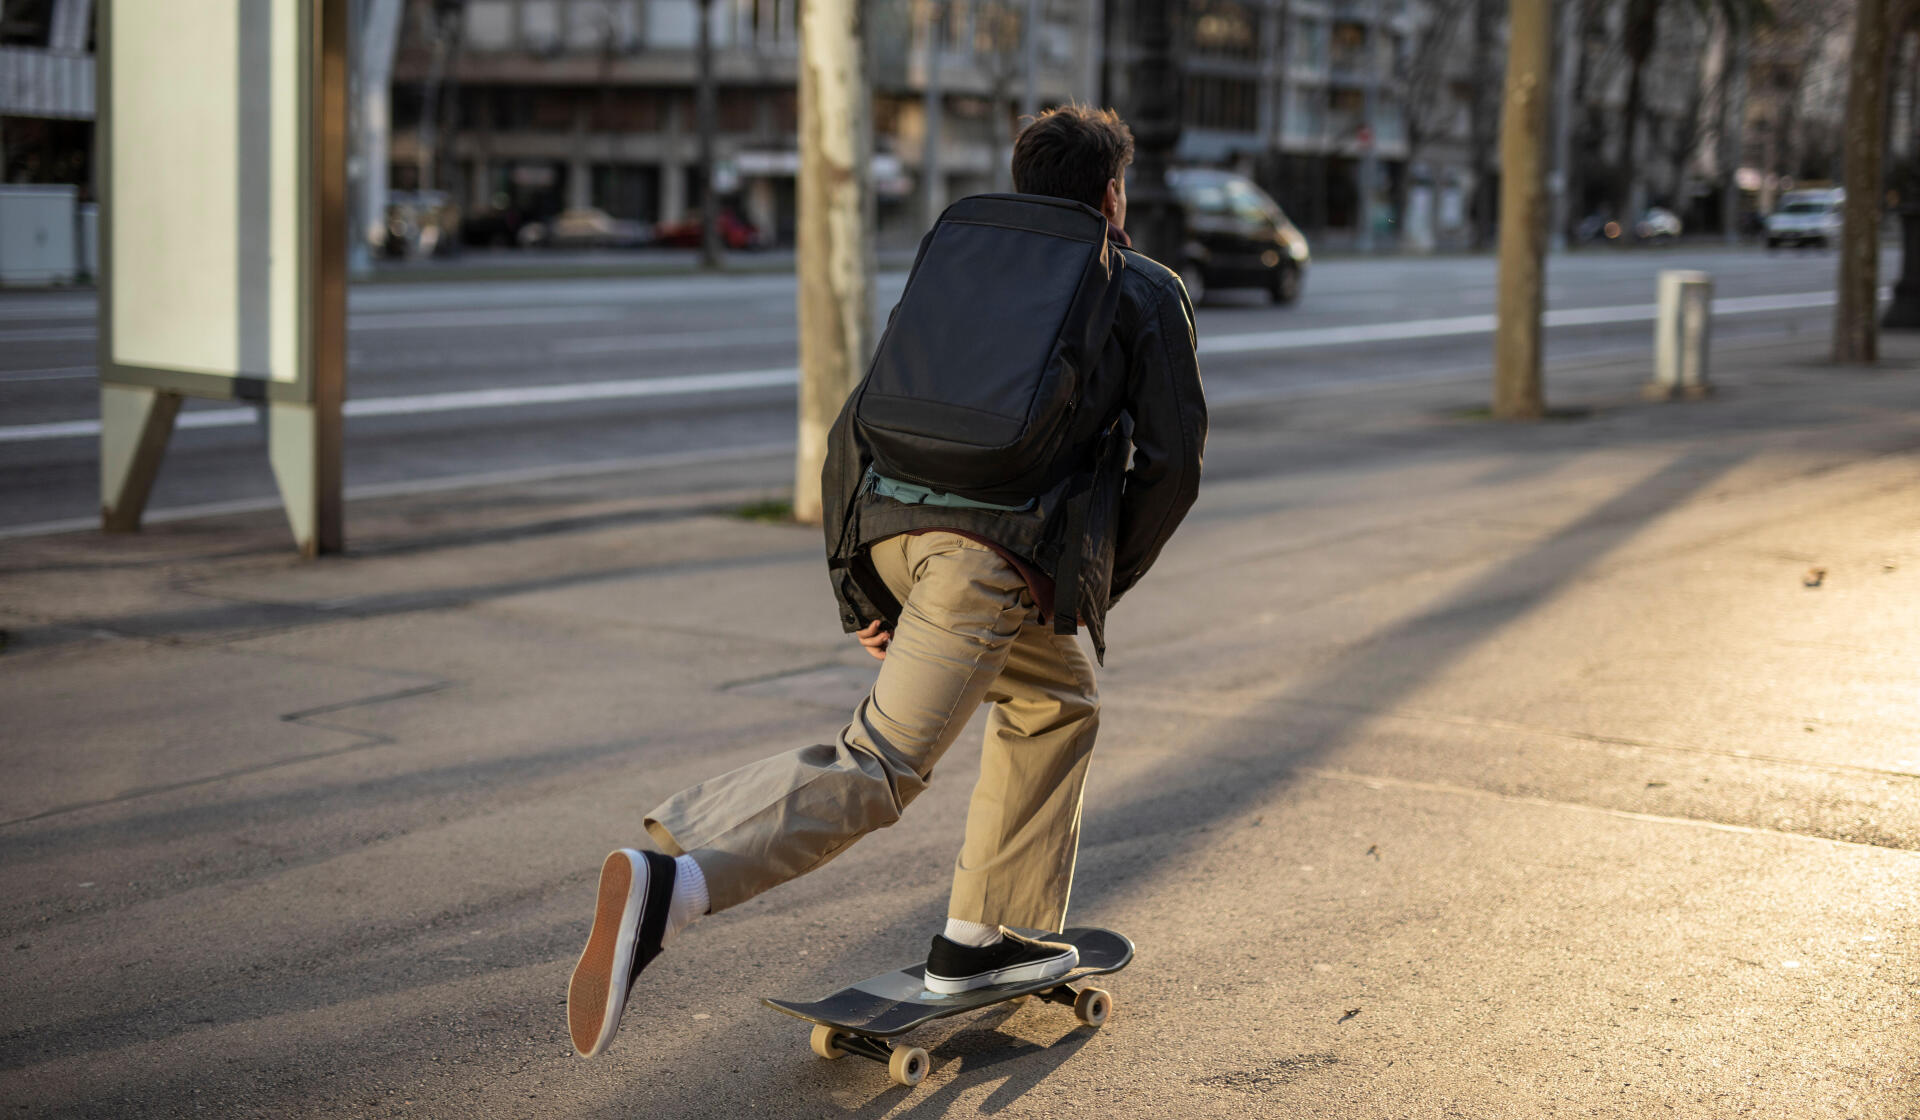 Apprendre à faire du cruiser: comment se déplacer facilement en skate